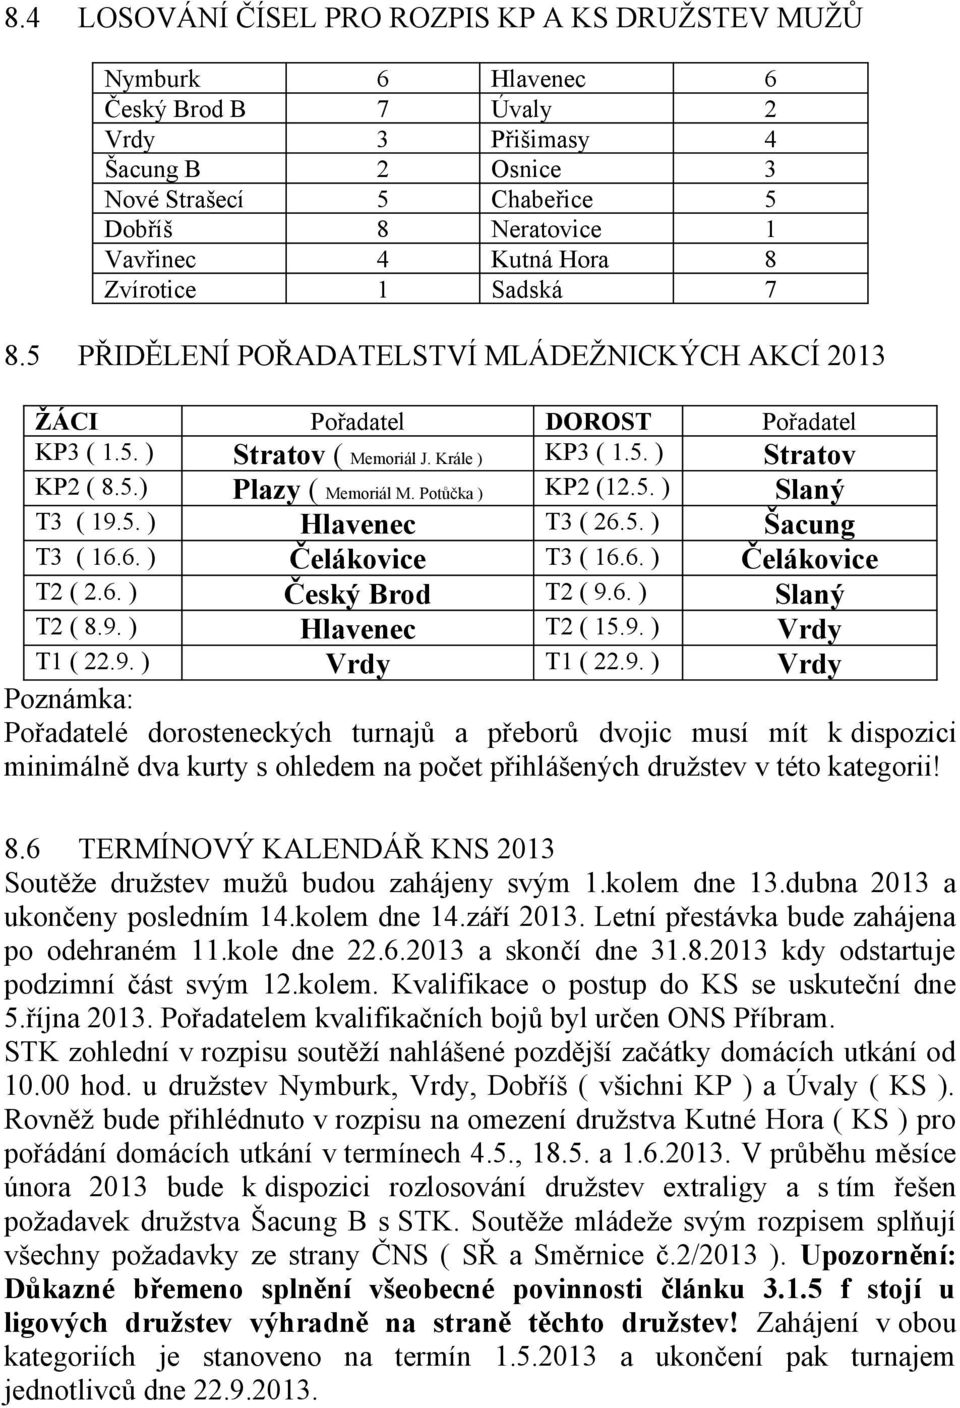 Potůčka ) KP2 (12.5. ) Slaný T3 ( 19.5. ) Hlavenec T3 ( 26.5. ) Šacung T3 ( 16.6. ) Čelákovice T3 ( 16.6. ) Čelákovice T2 ( 2.6. ) Český Brod T2 ( 9.6. ) Slaný T2 ( 8.9. ) Hlavenec T2 ( 15.9. ) Vrdy T1 ( 22.